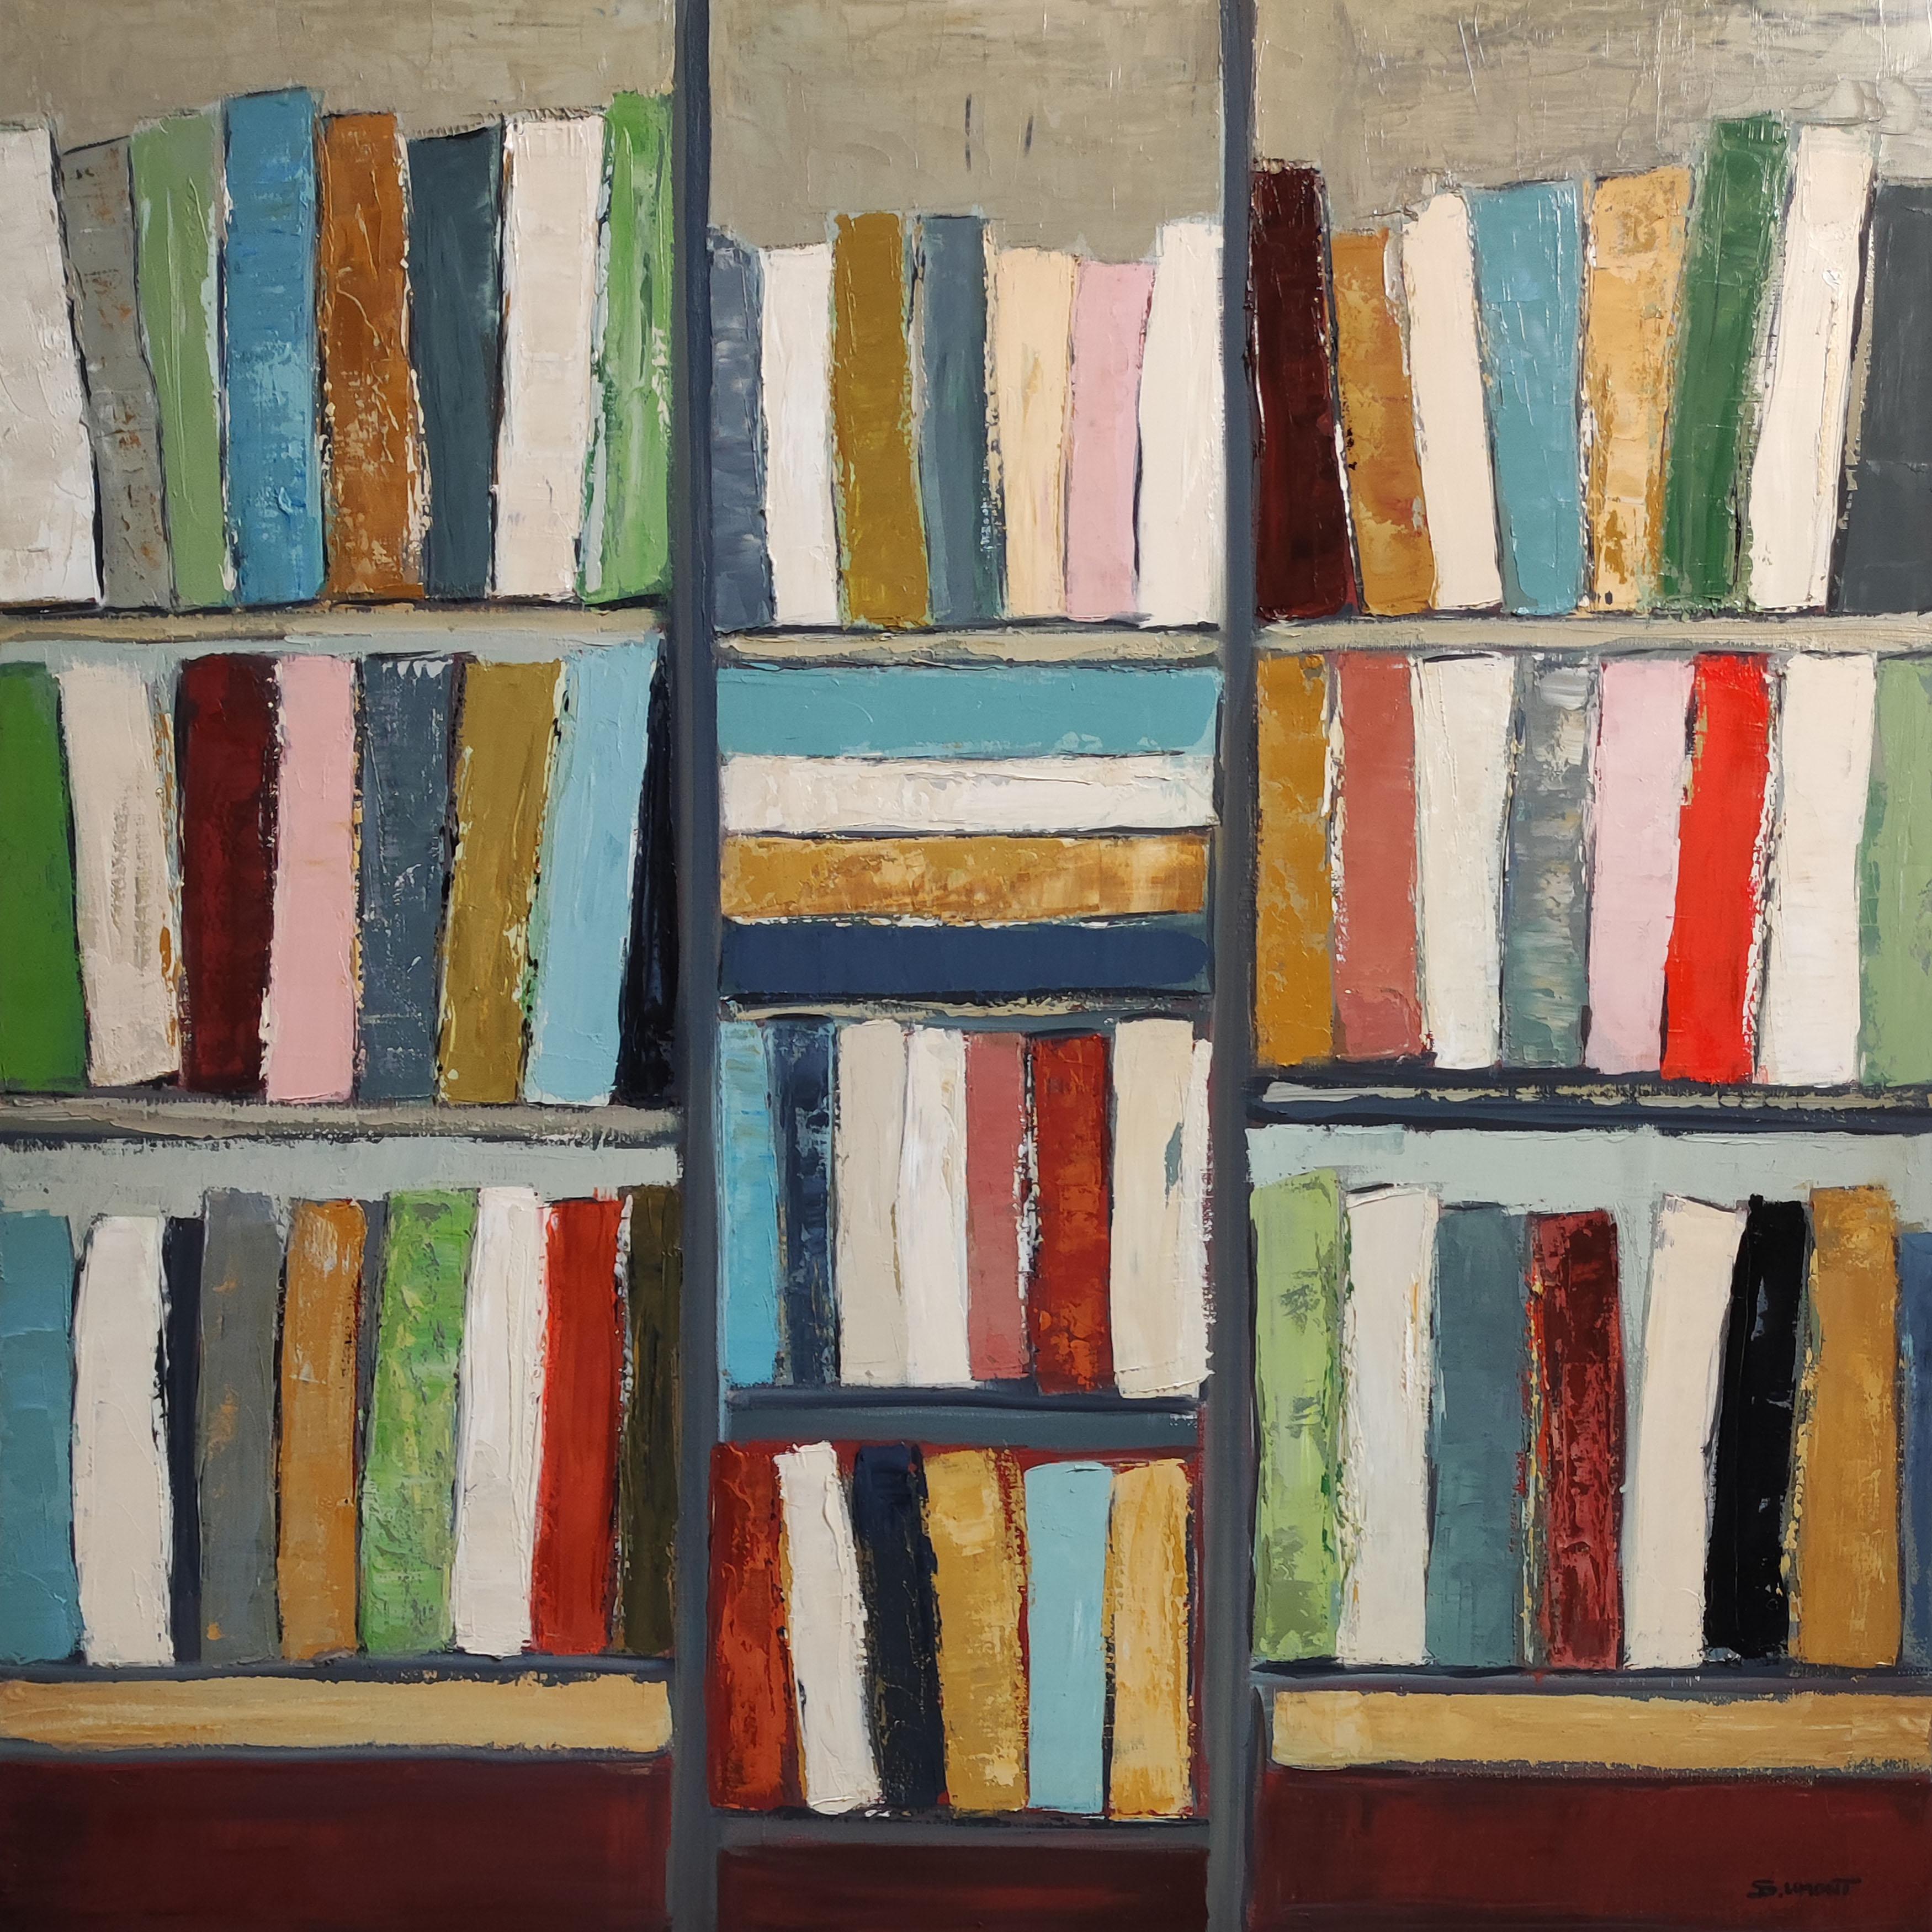 de Sophie Dumont propose une exploration de la convergence entre la littérature et les arts visuels. La toile représente une bibliothèque avec des livres colorés, peints à l'huile à l'aide d'un couteau à palette, où le livre devient moins un objet